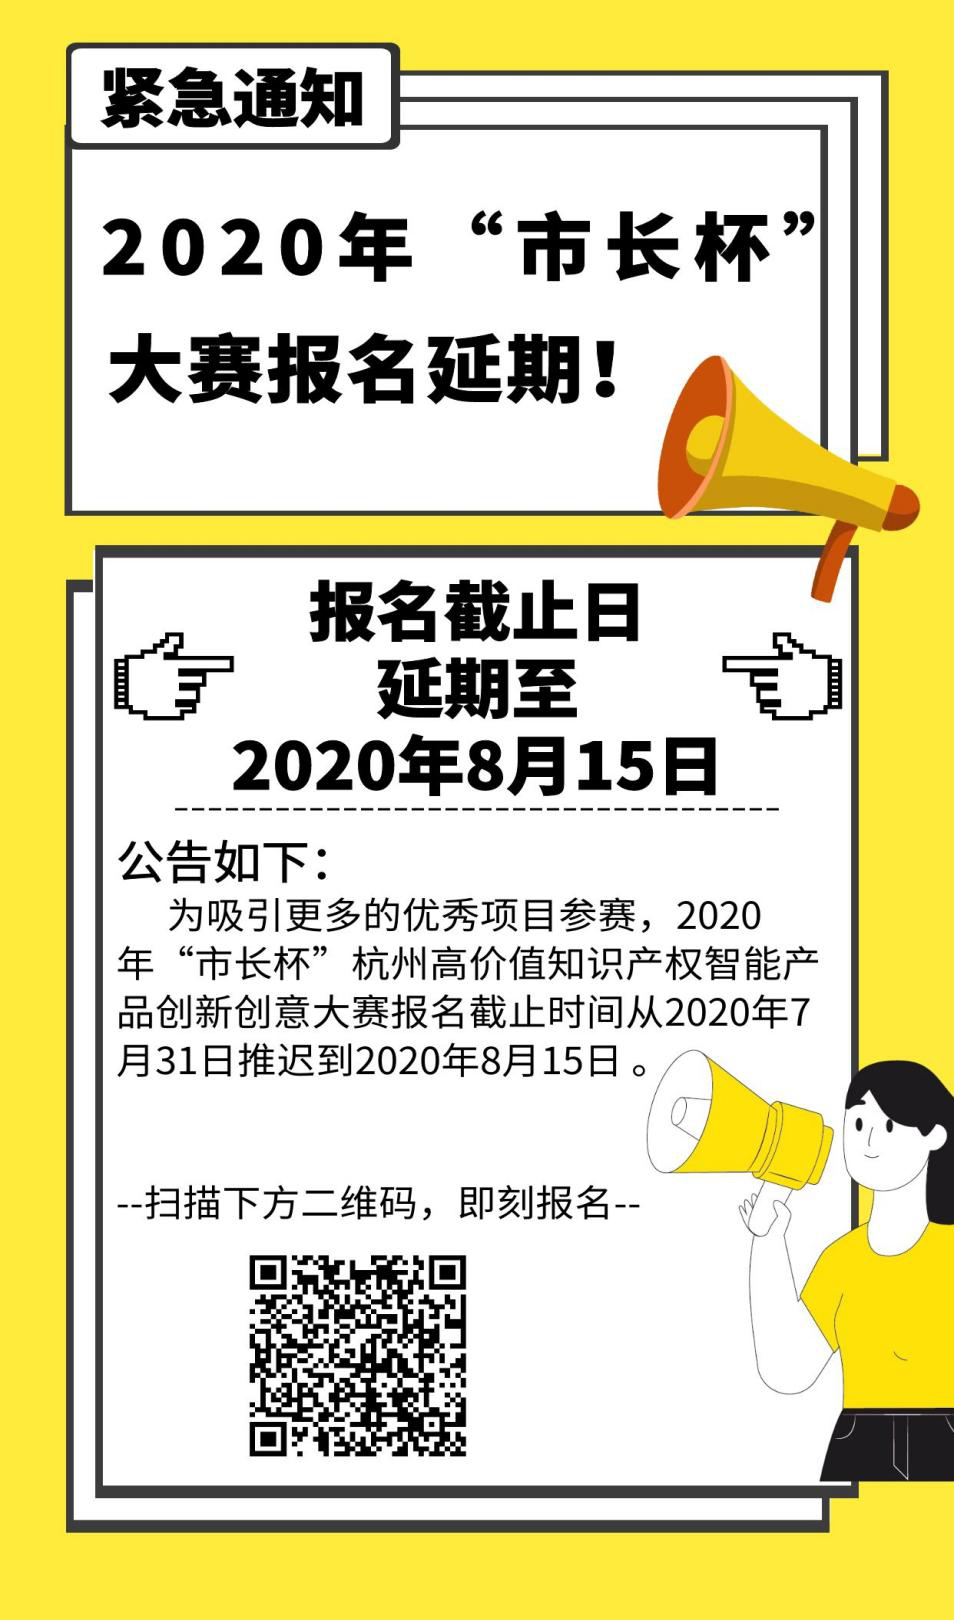 延期通知！2020年“市长杯”杭州高价值知识产权智能产品创新创意大赛报名延期